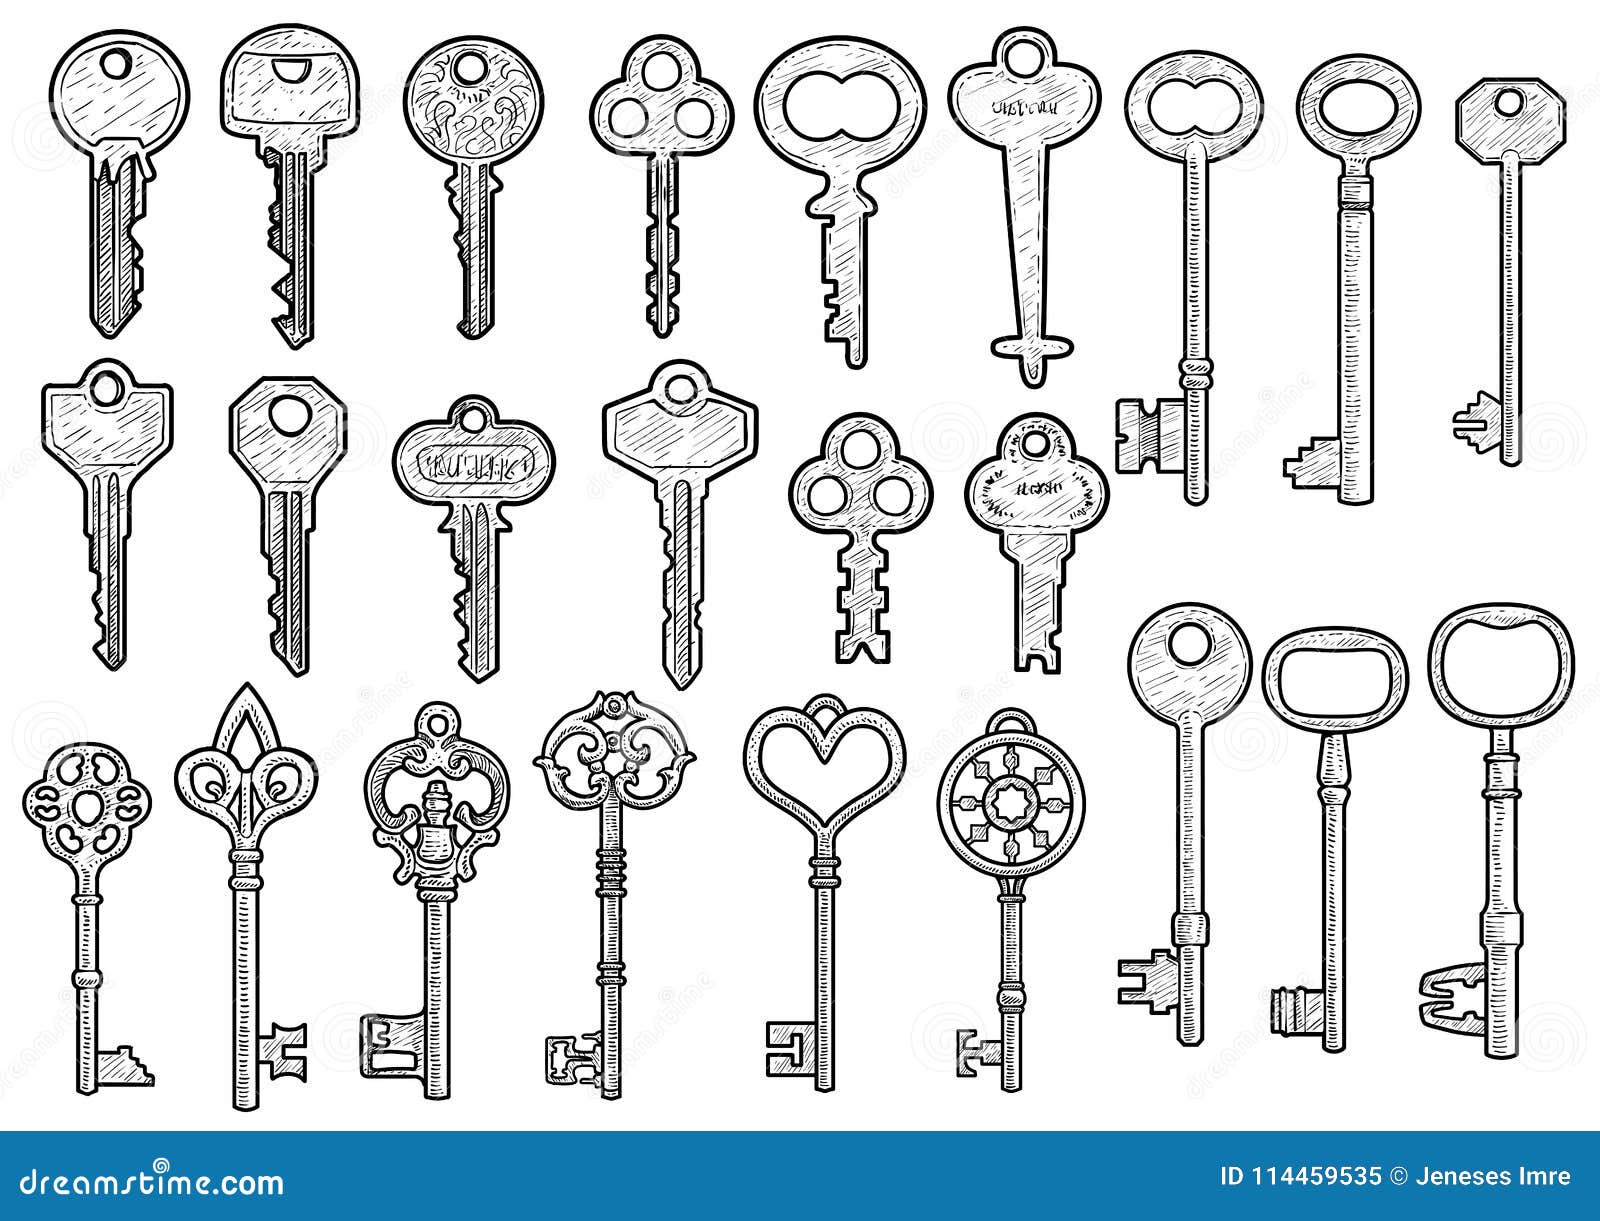 Lock key sketch free image download